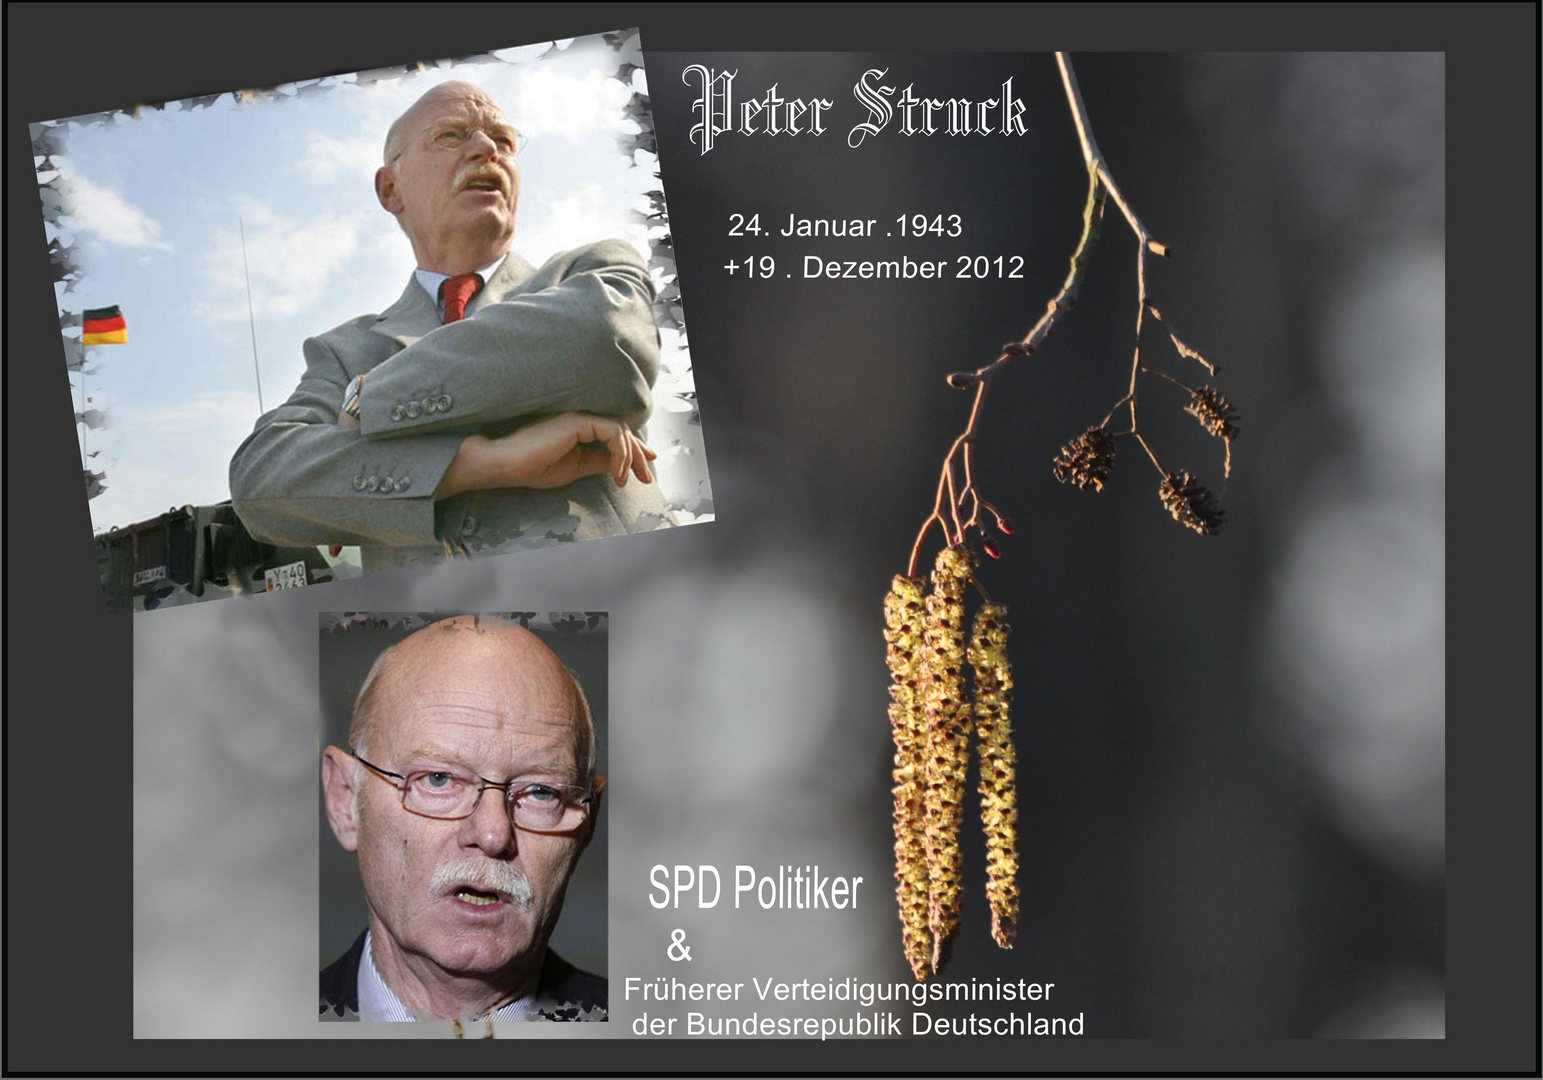 Peter Struck